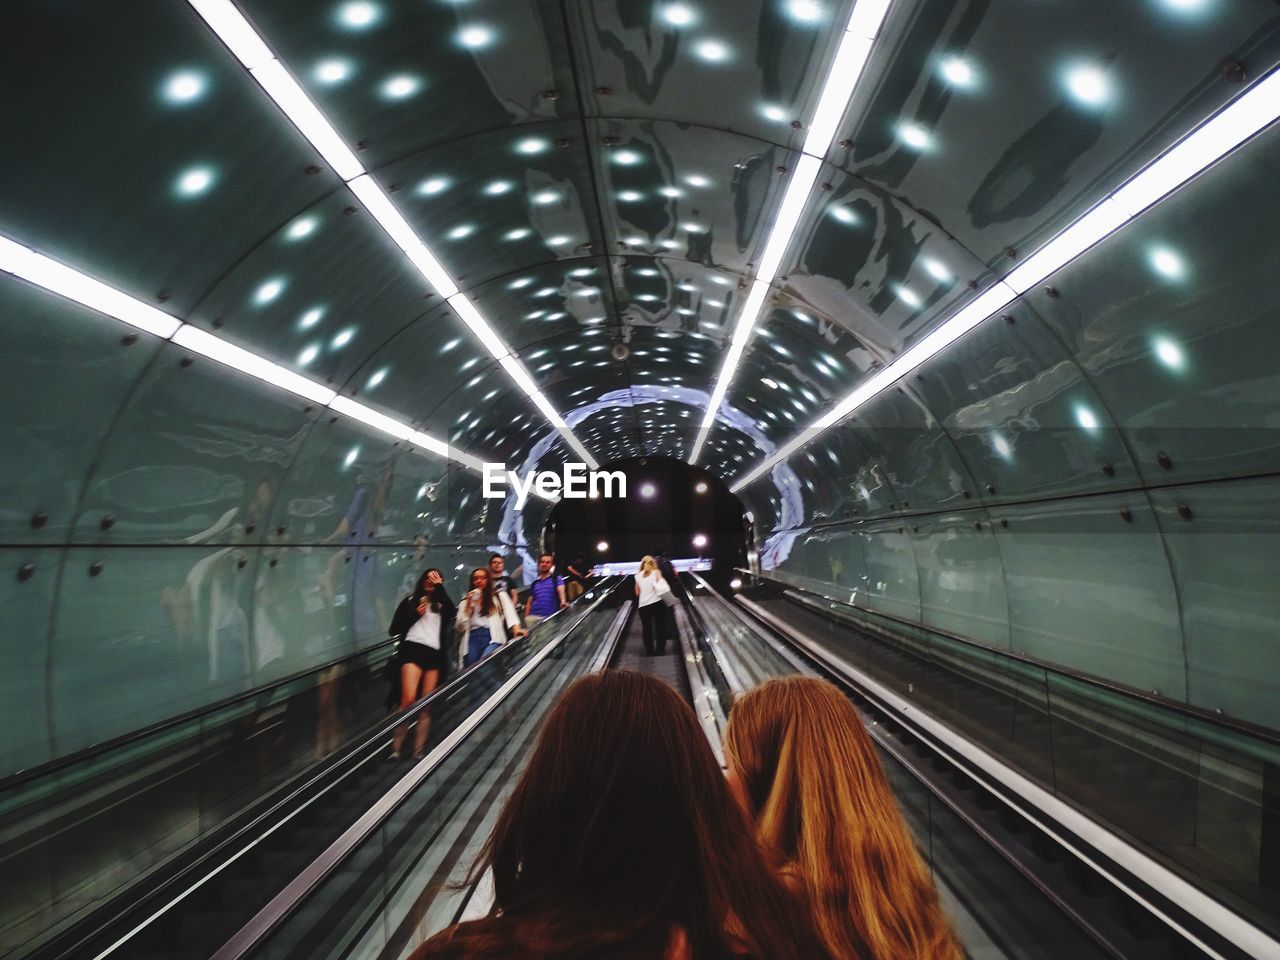 People on escalators against illuminated ceiling